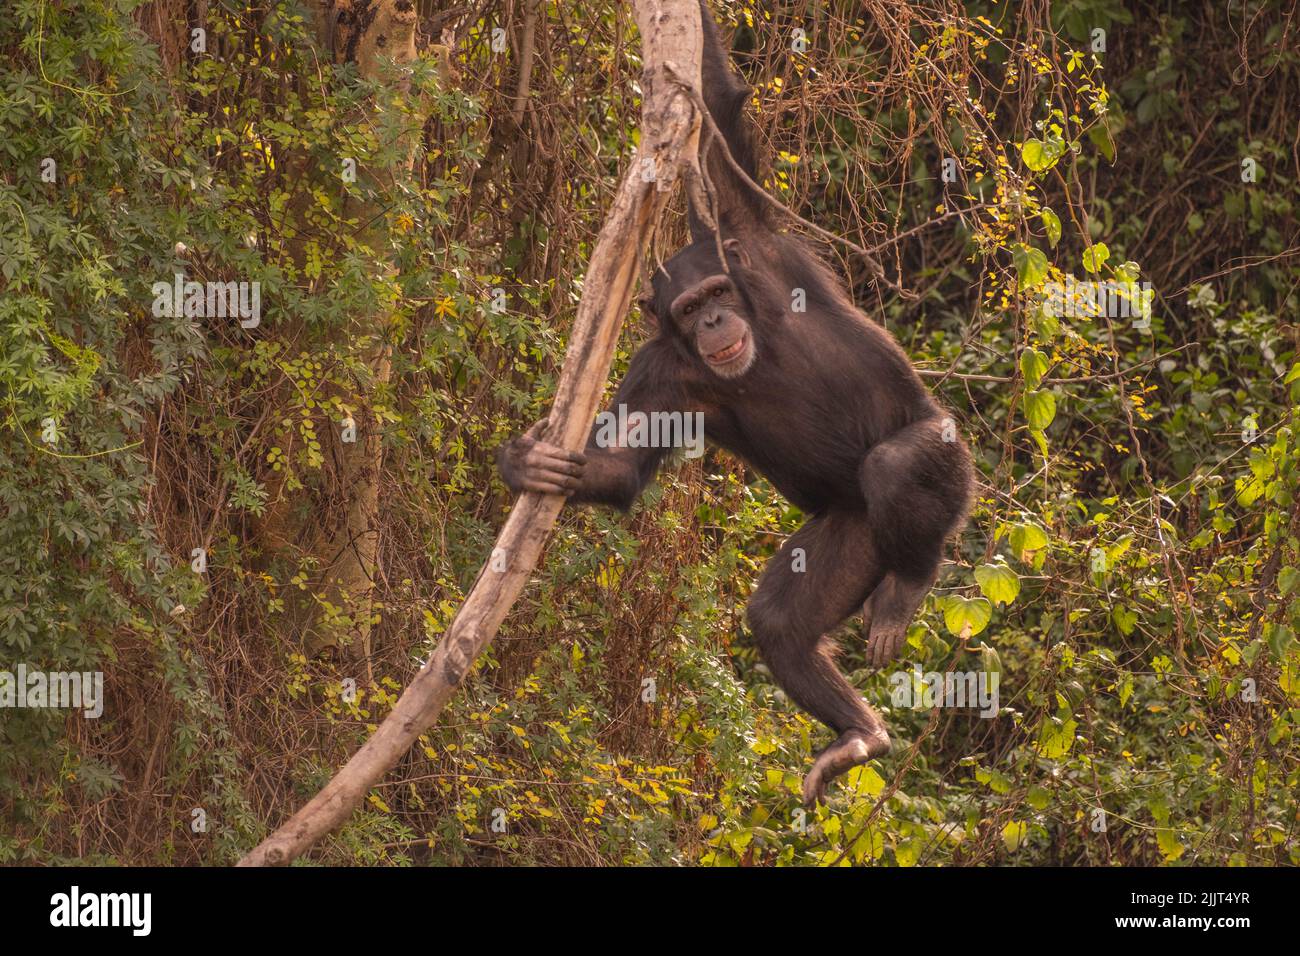 Le chimpe saute sur la branche des arbres dans la nature sauvage. Banque D'Images